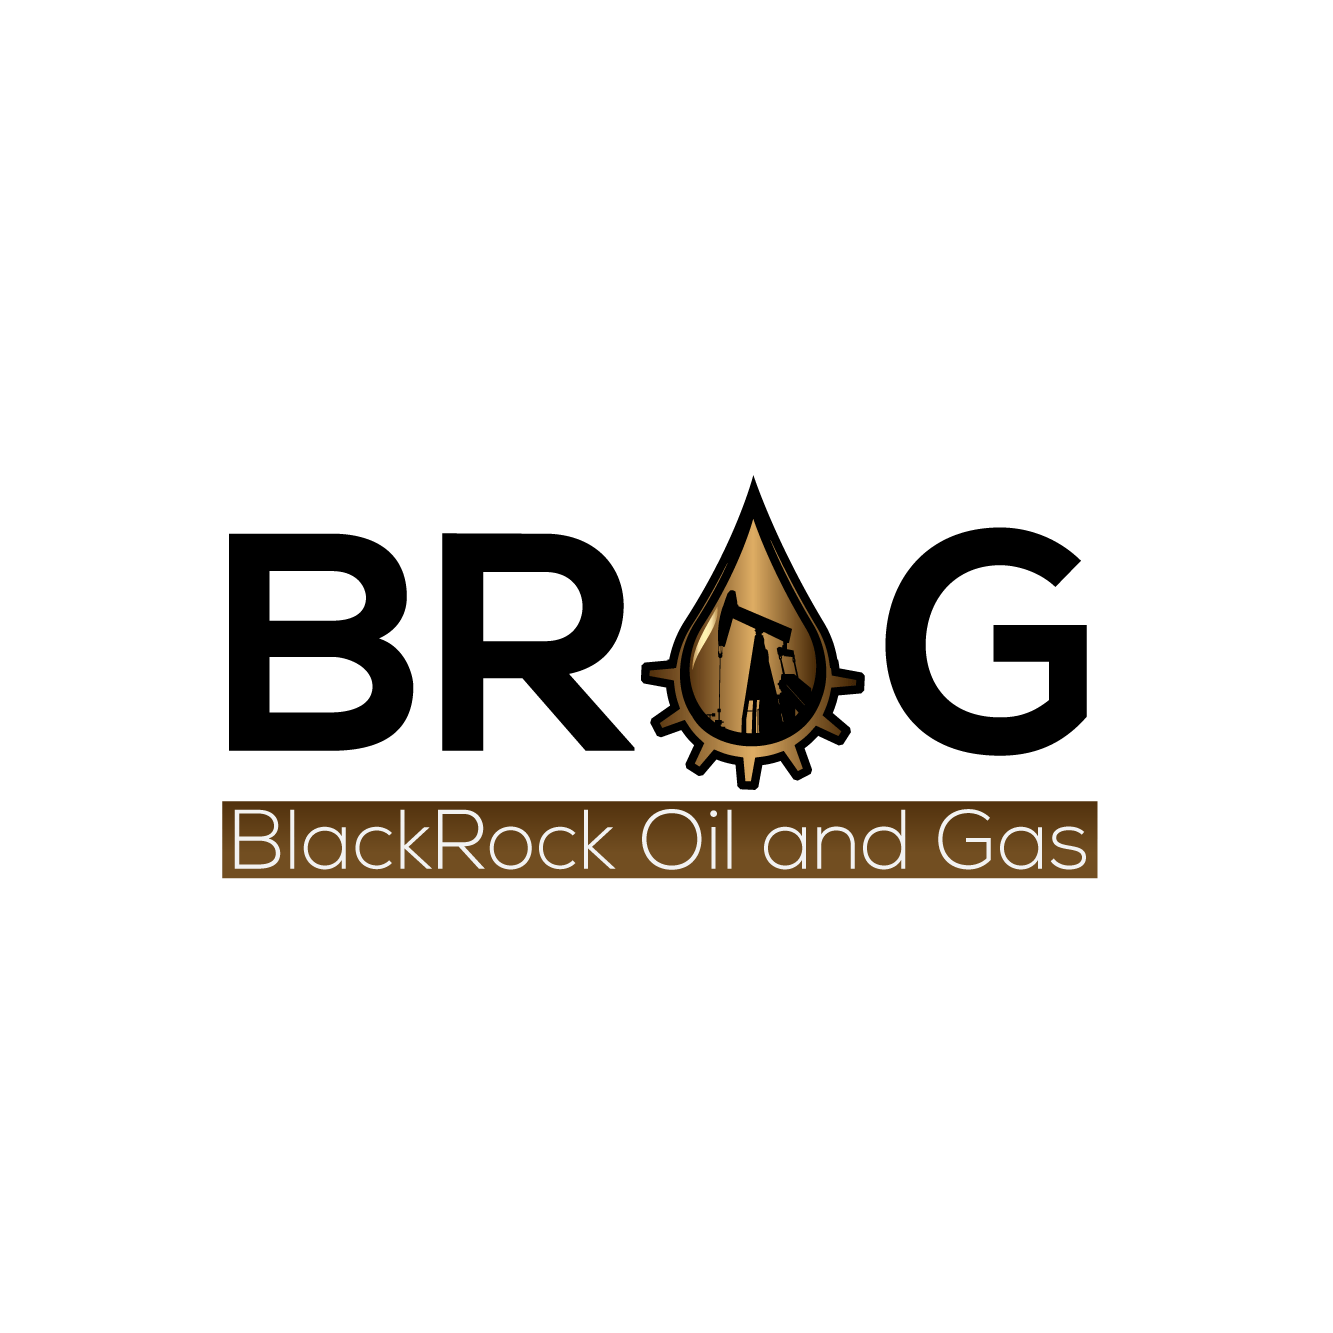 Blackrock Logo - Bold, Serious, Oil And Gas Logo Design for BROG or BlackRock Oil and ...